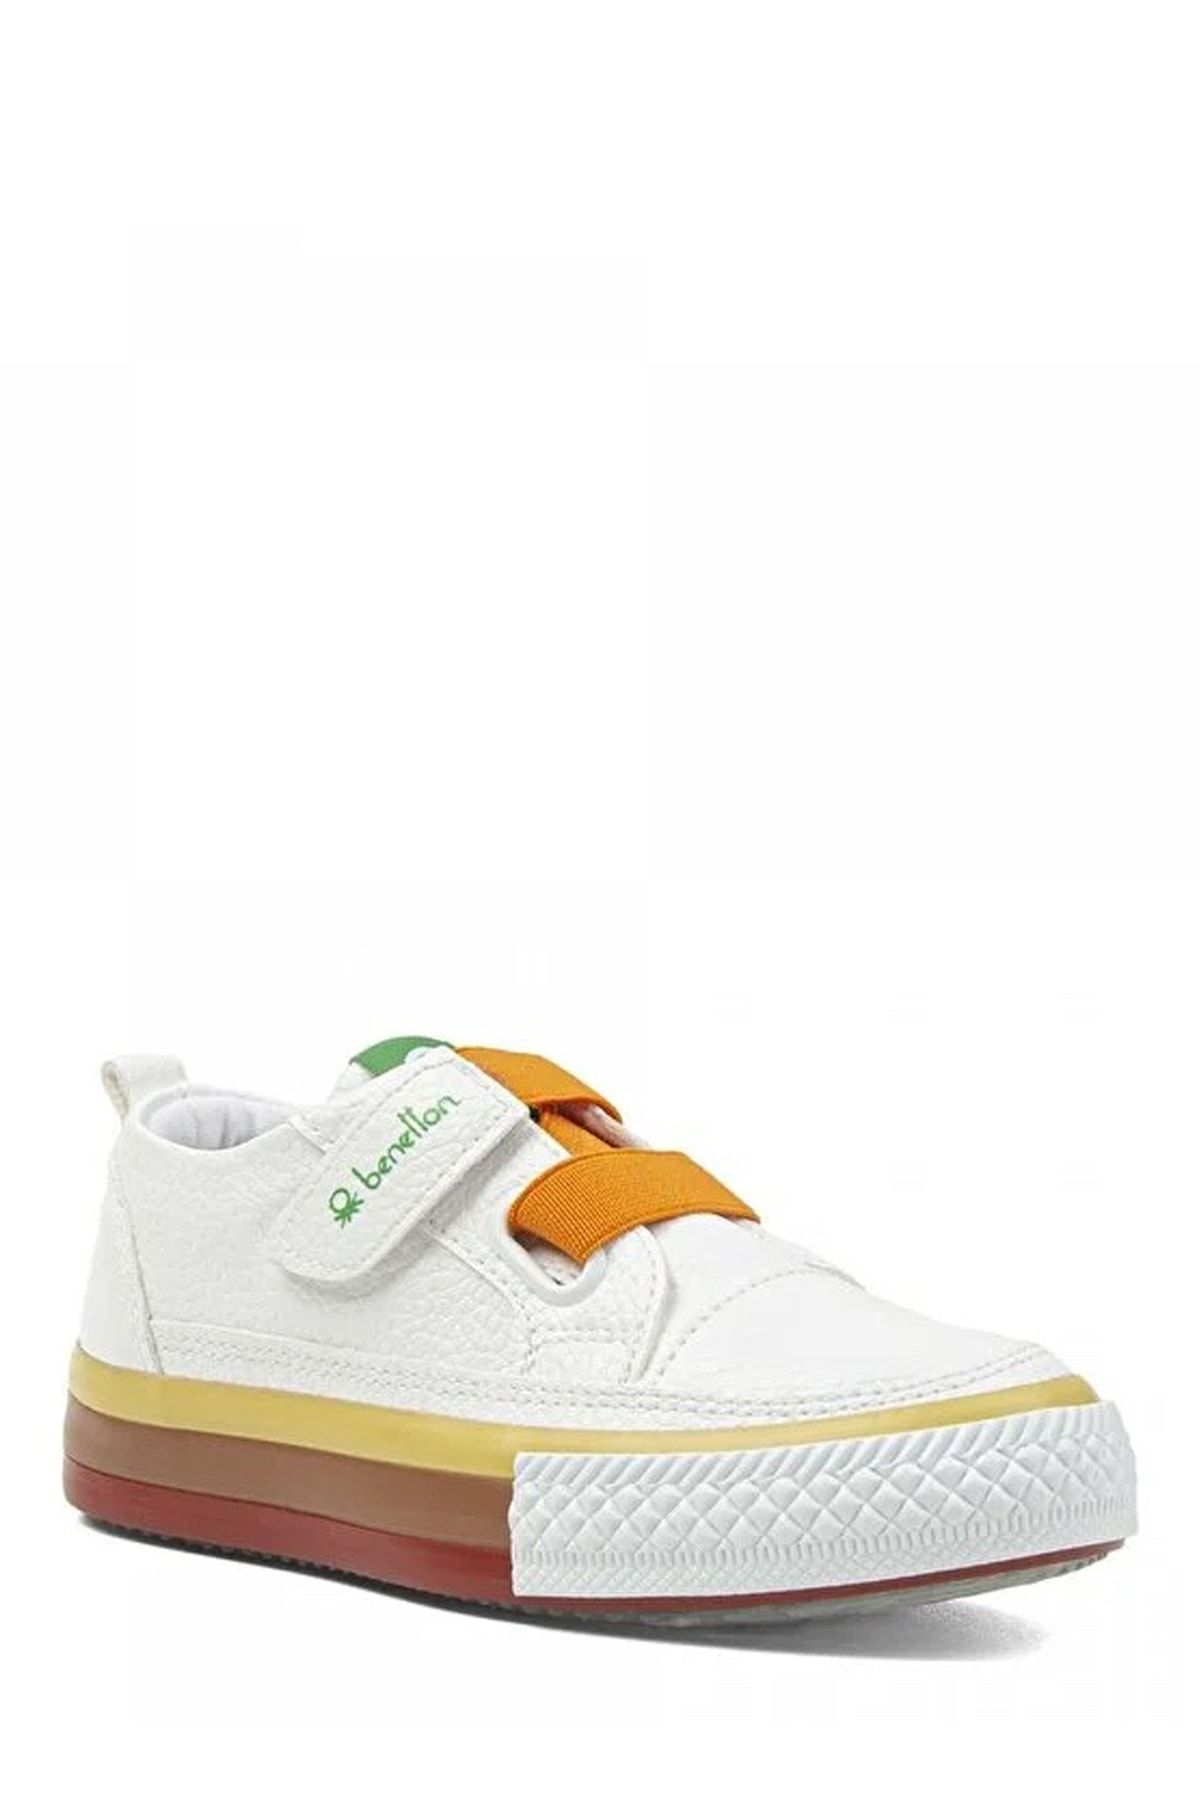 Benetton Beyaz - Turuncu Bebek Sneaker BN-30445